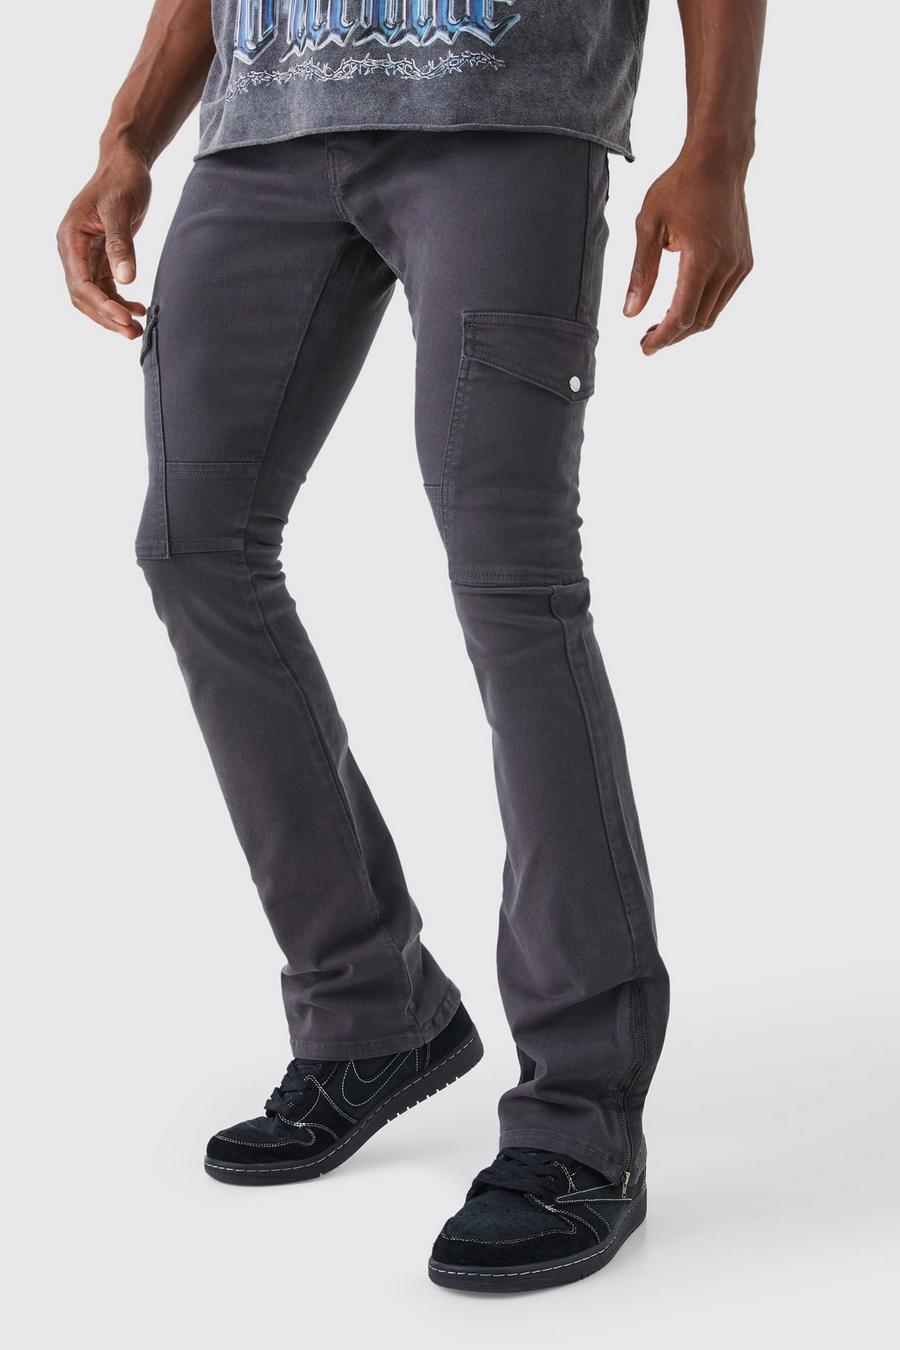 Pantaloni Cargo Skinny Fit con inserti, zip e vita fissa, Charcoal